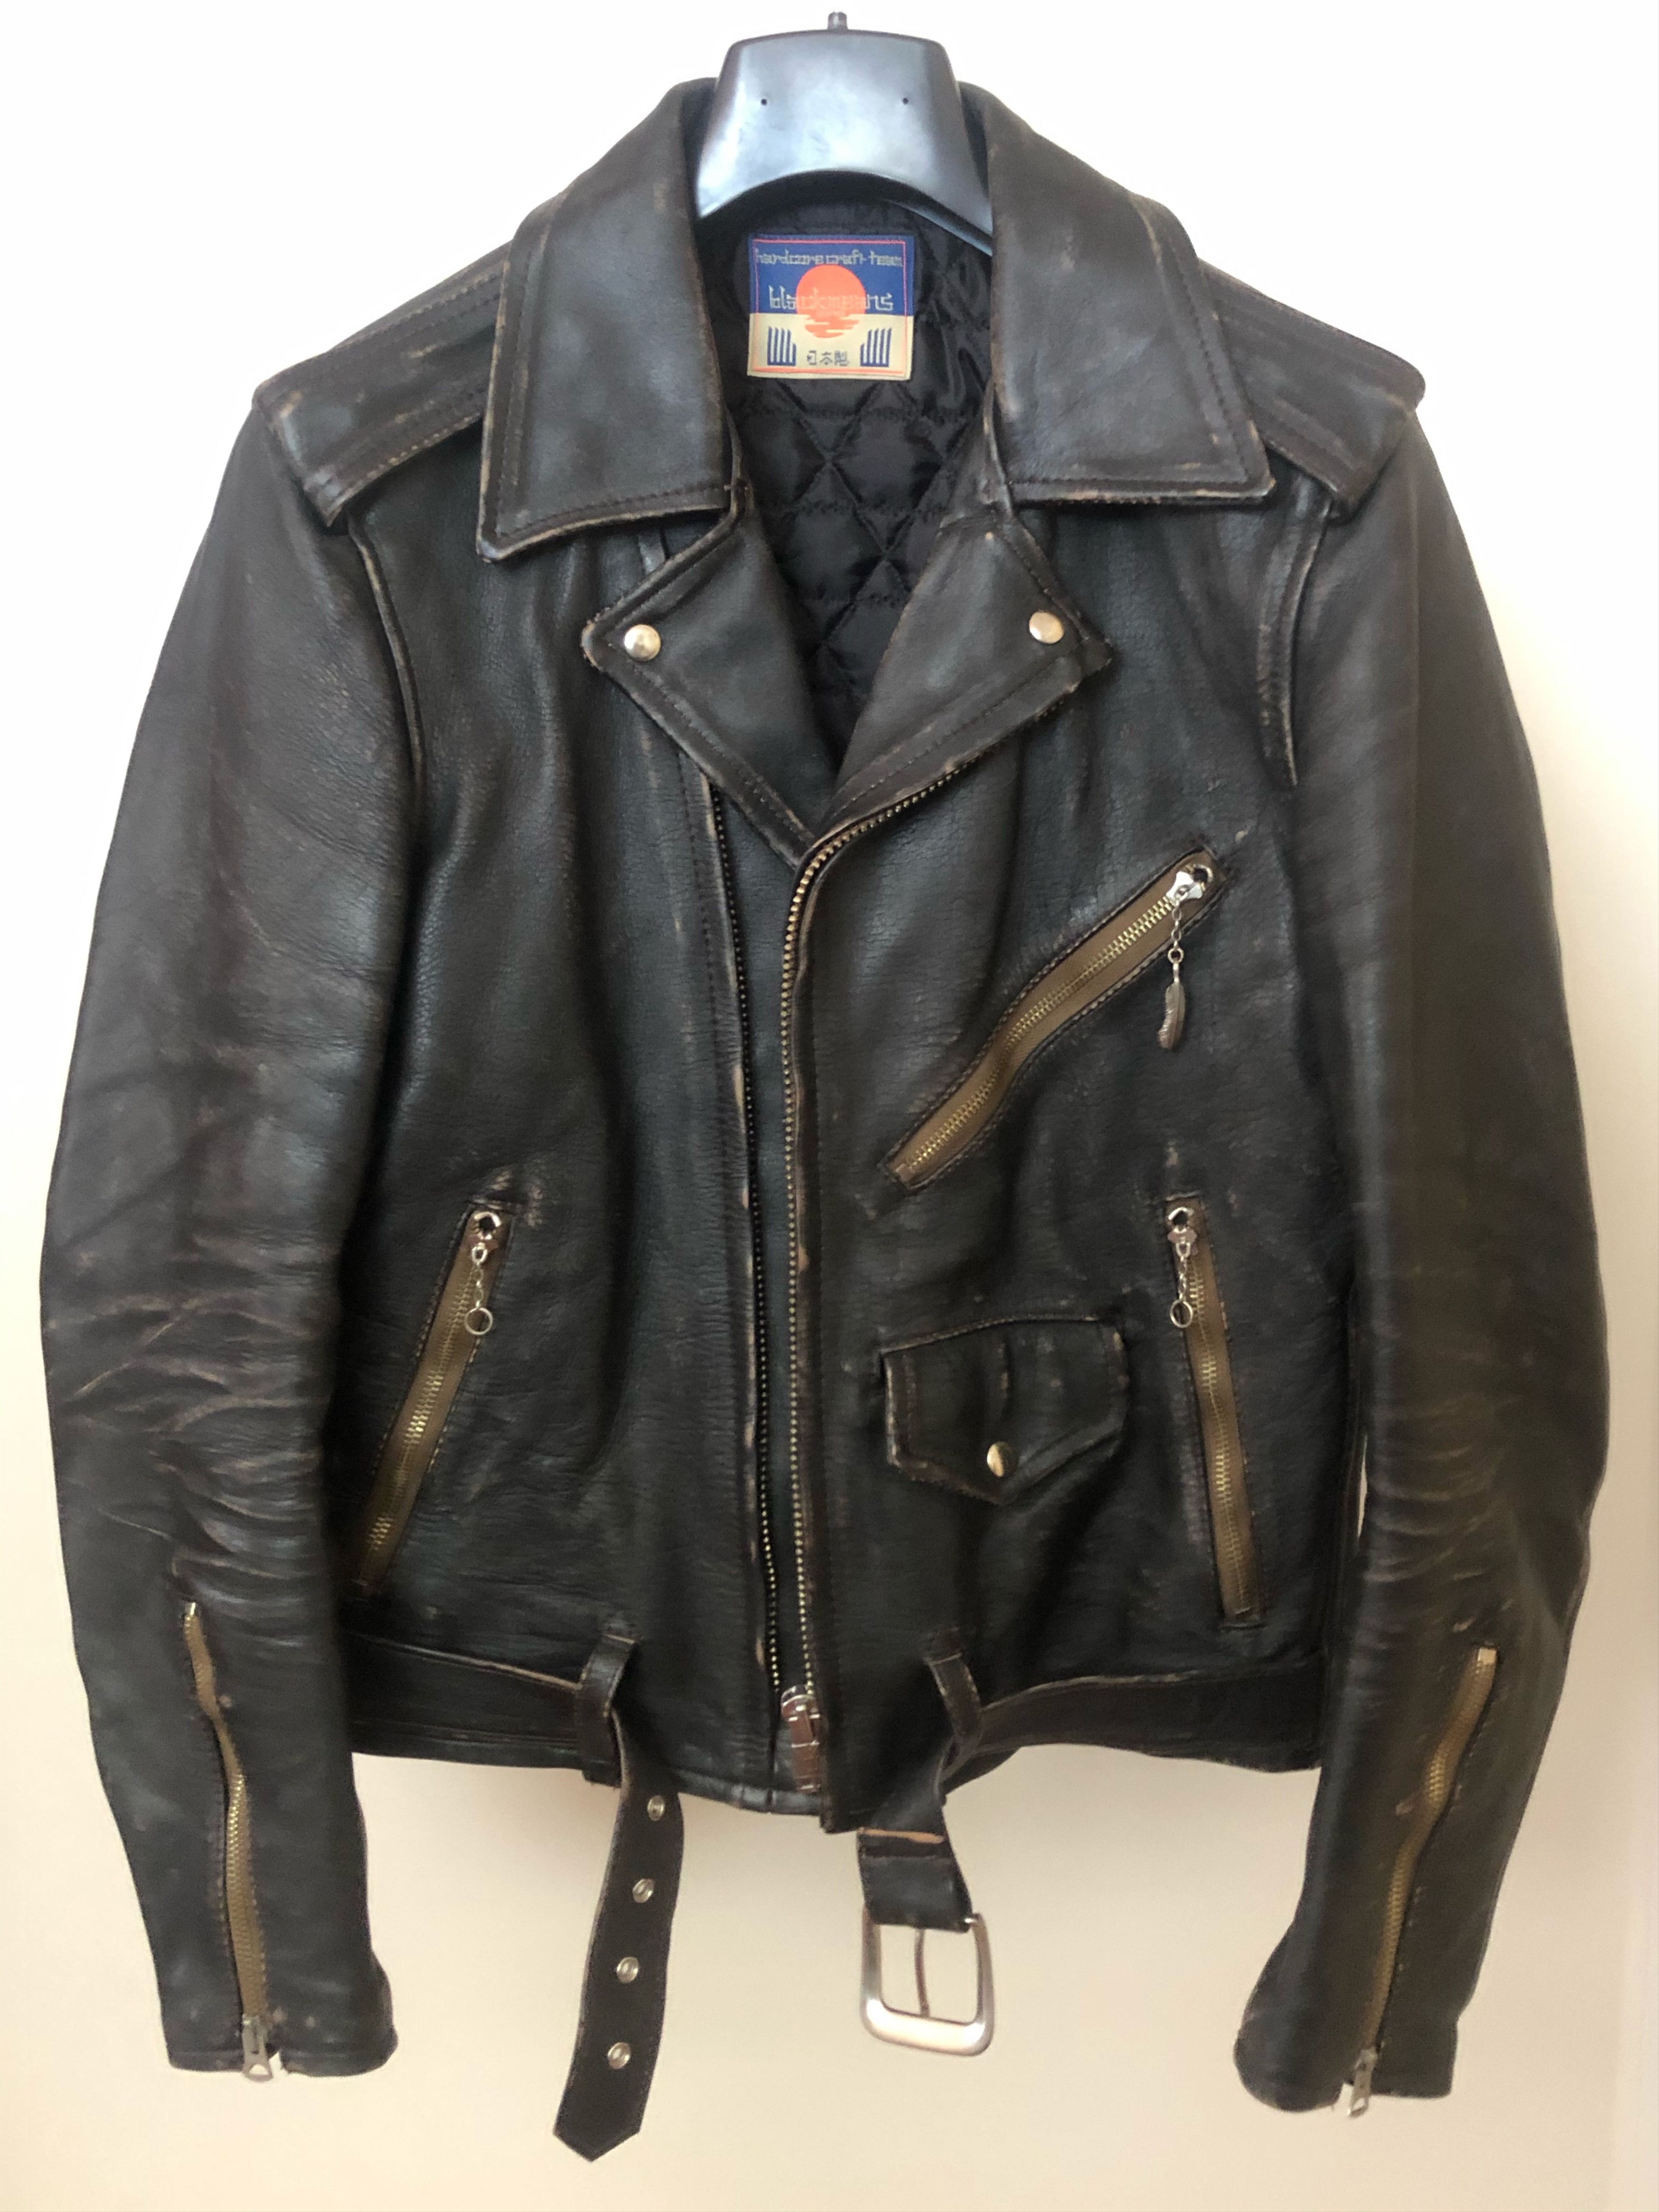 Blackmeans Blackmeans Sid Vicious Leather Jacket | Grailed